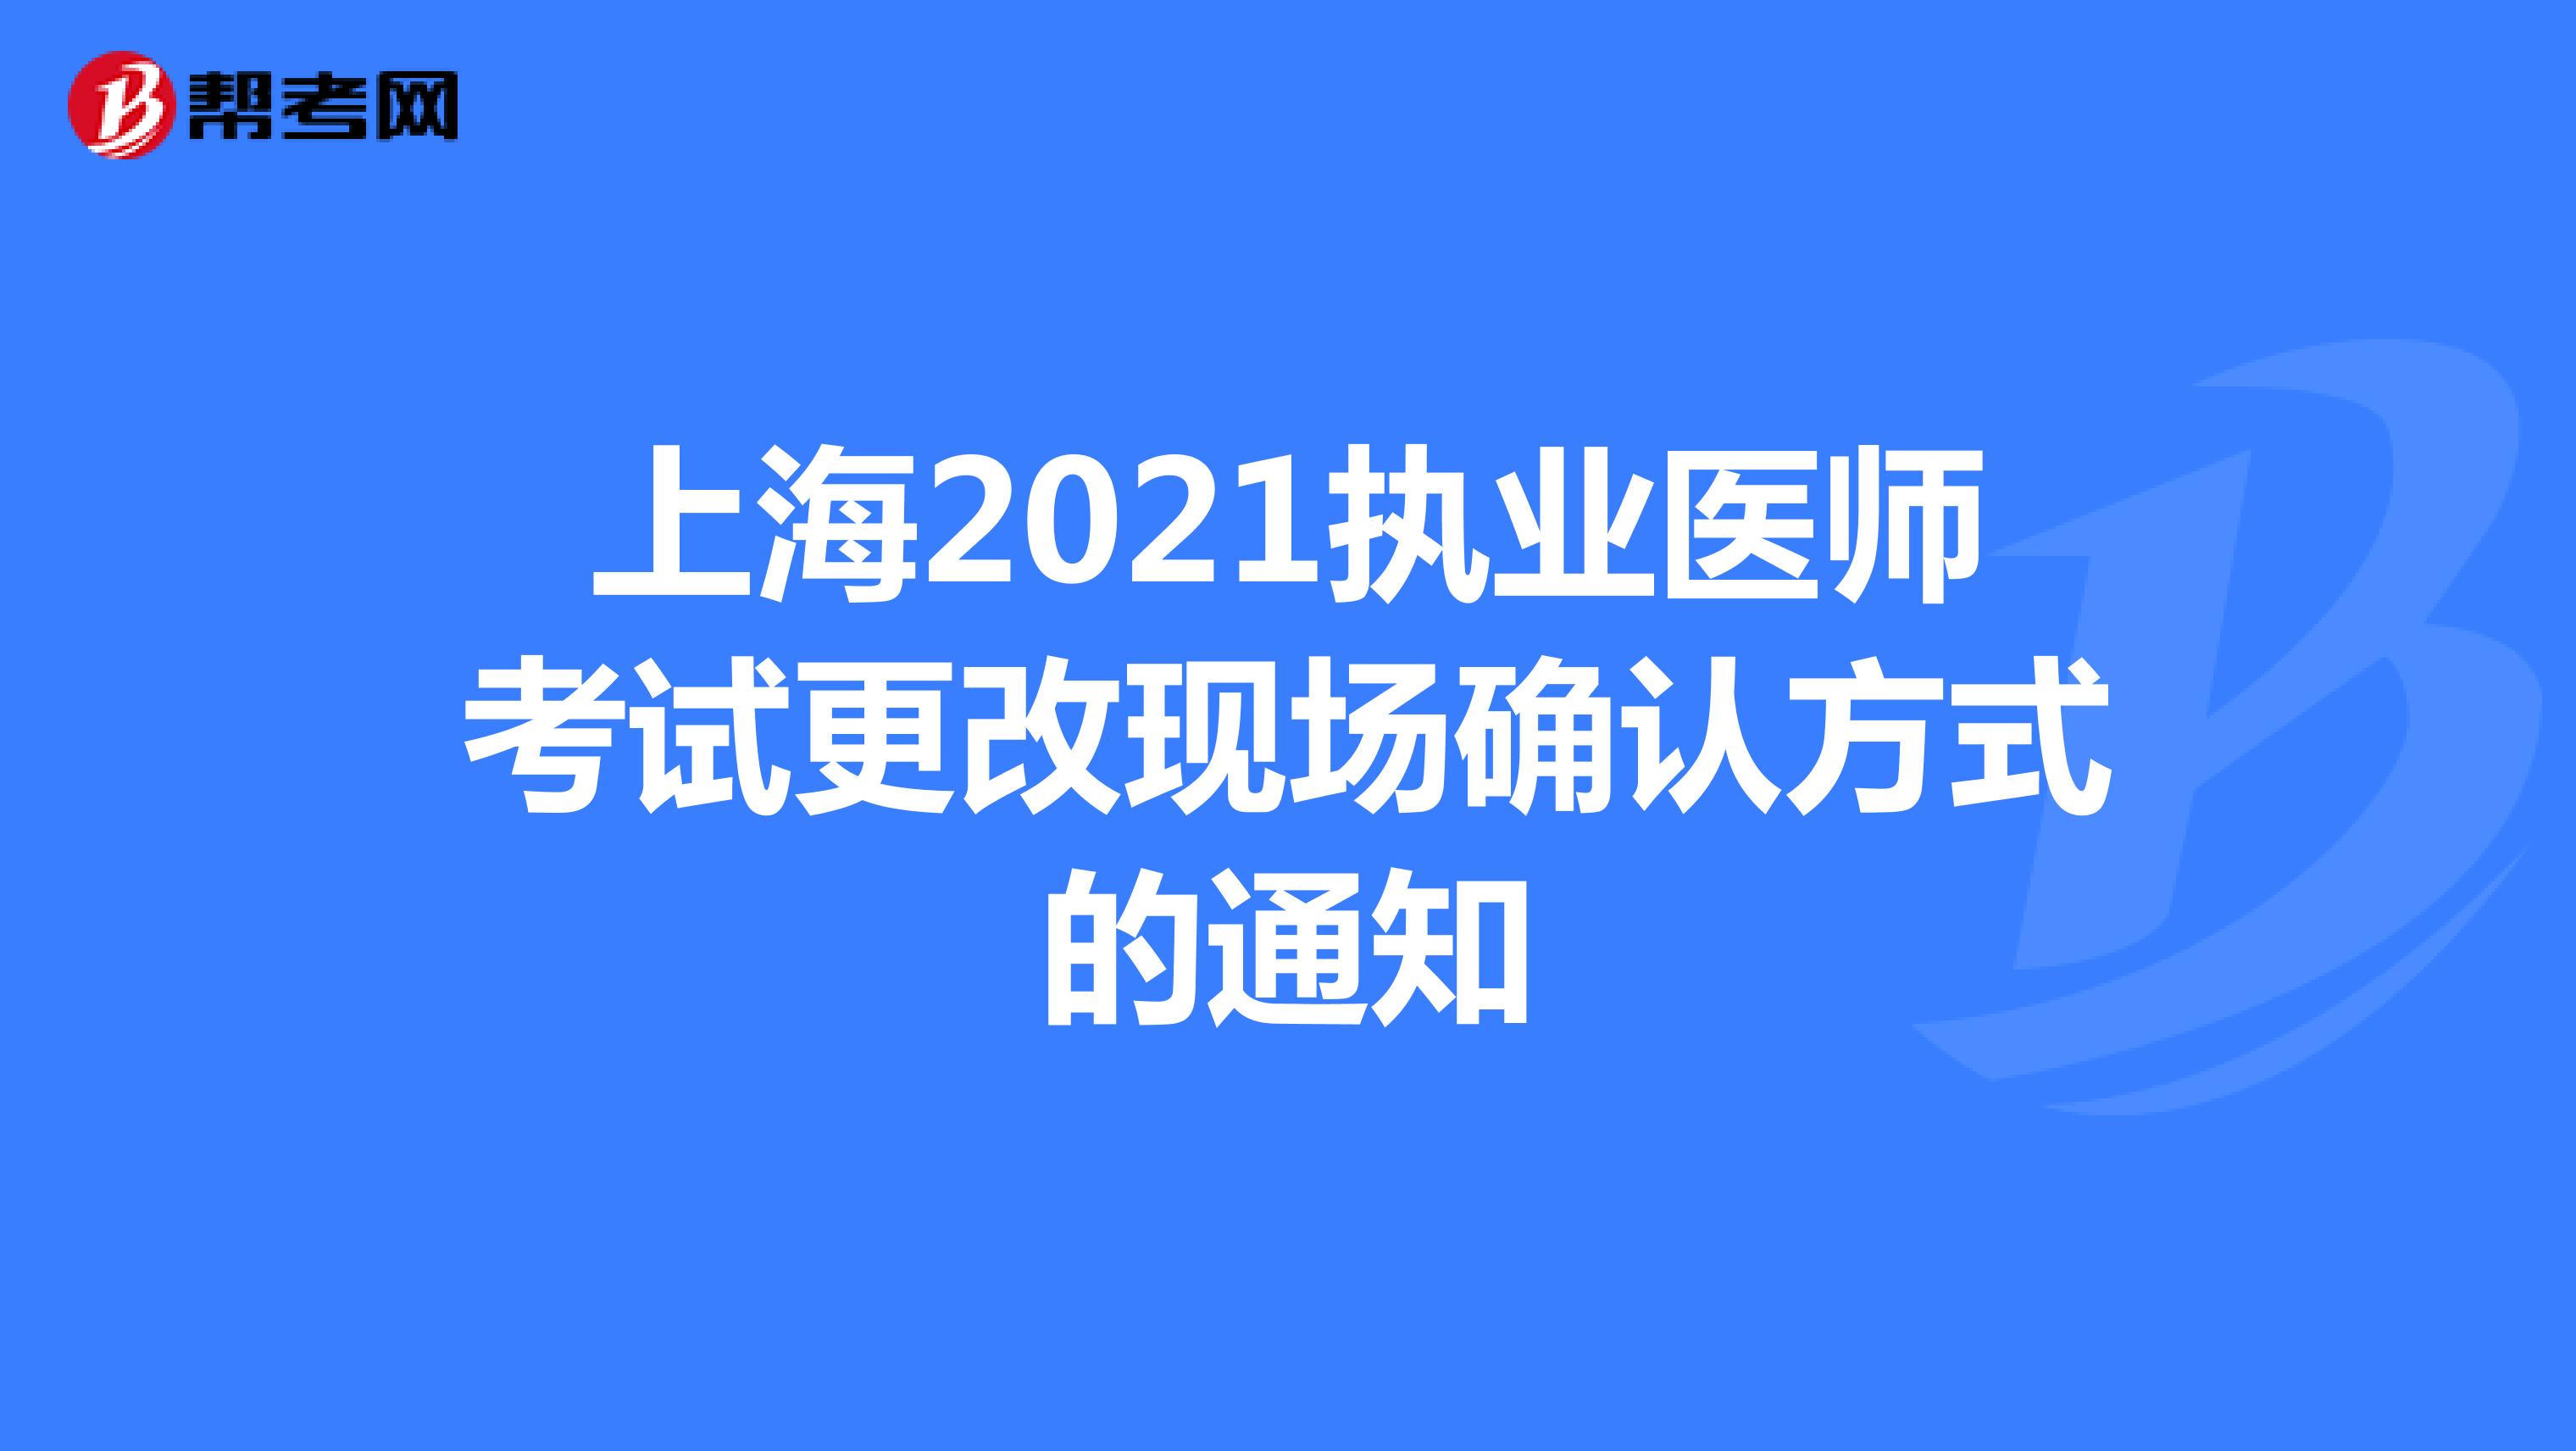 上海2021执业医师考试更改现场确认方式的通知